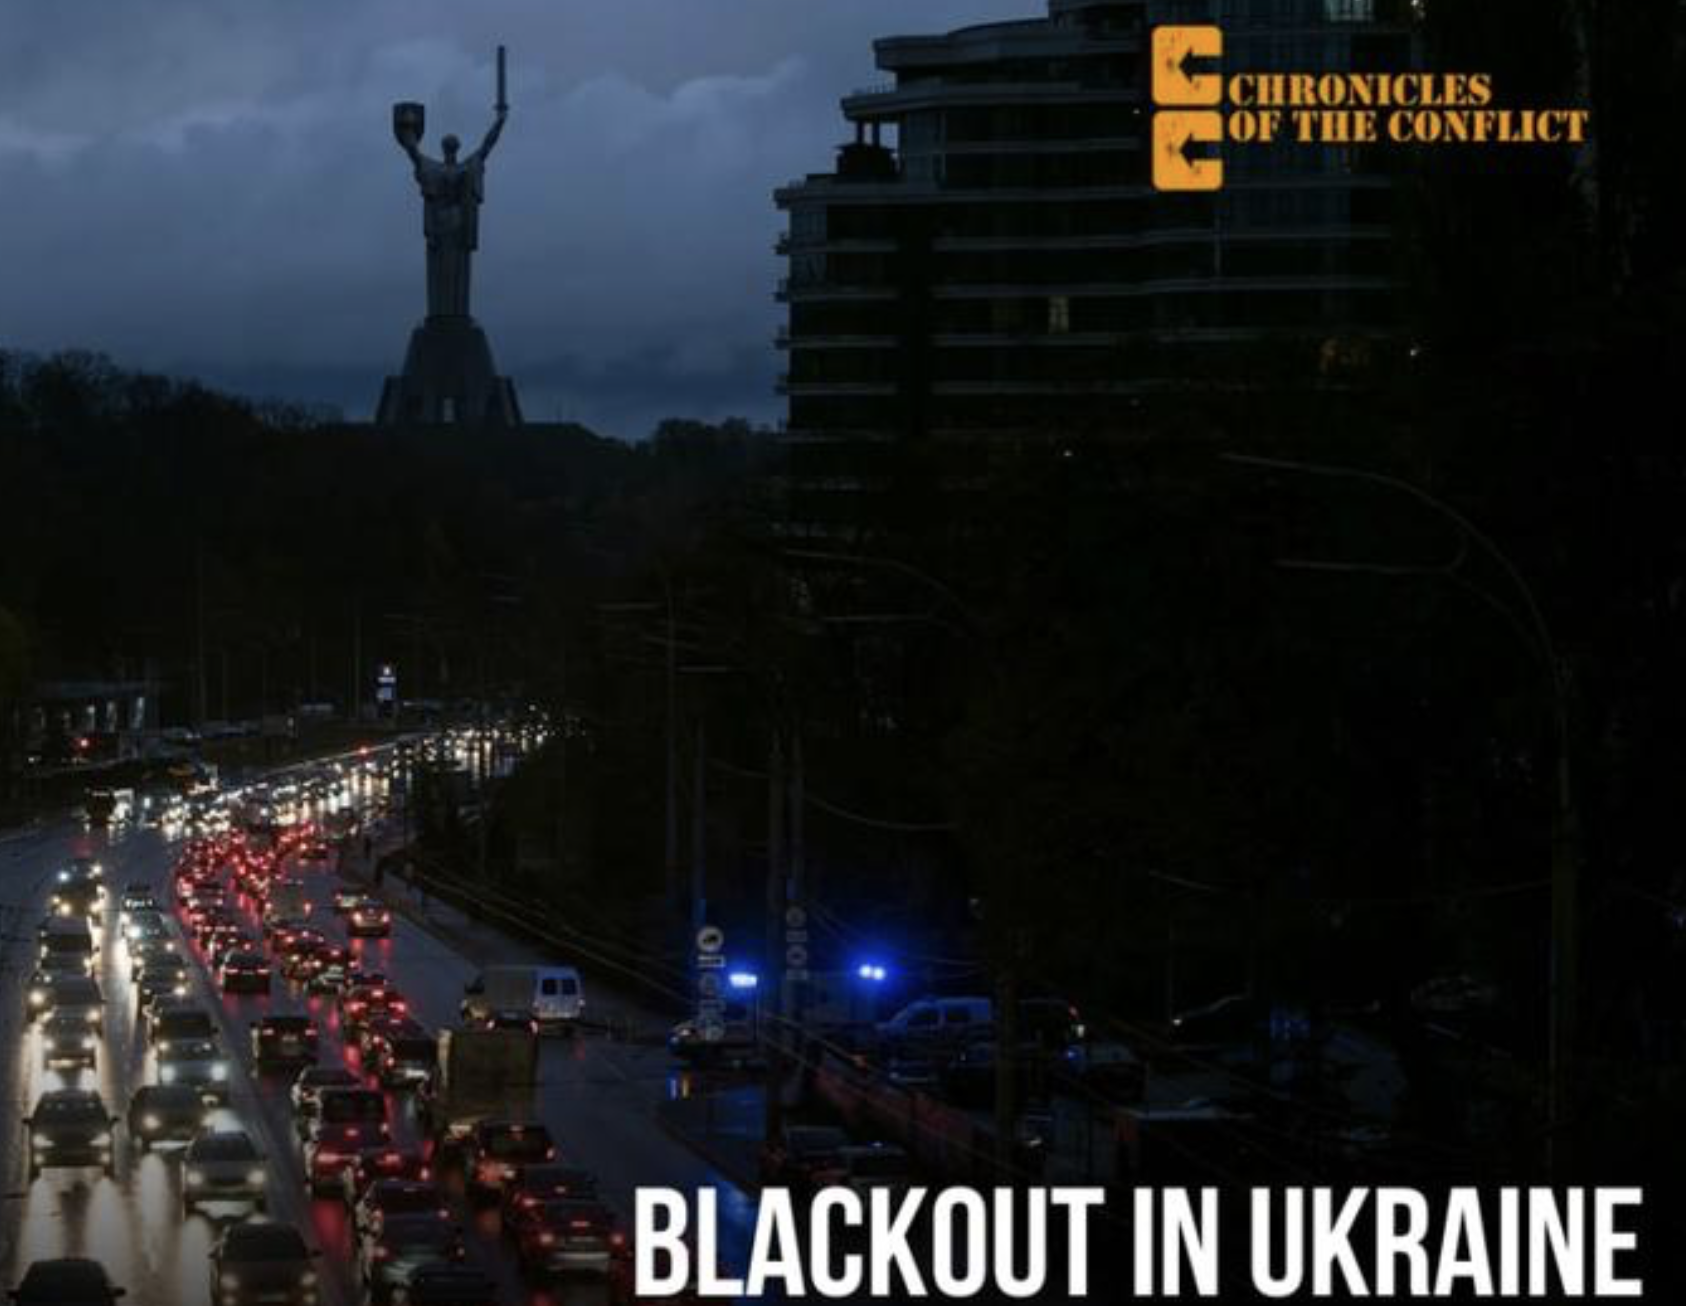 Χιόνι στο Κίεβο, με συνεχείς διακοπές ρεύματος και σε αναμονή νέων ρωσικών επιθέσεων